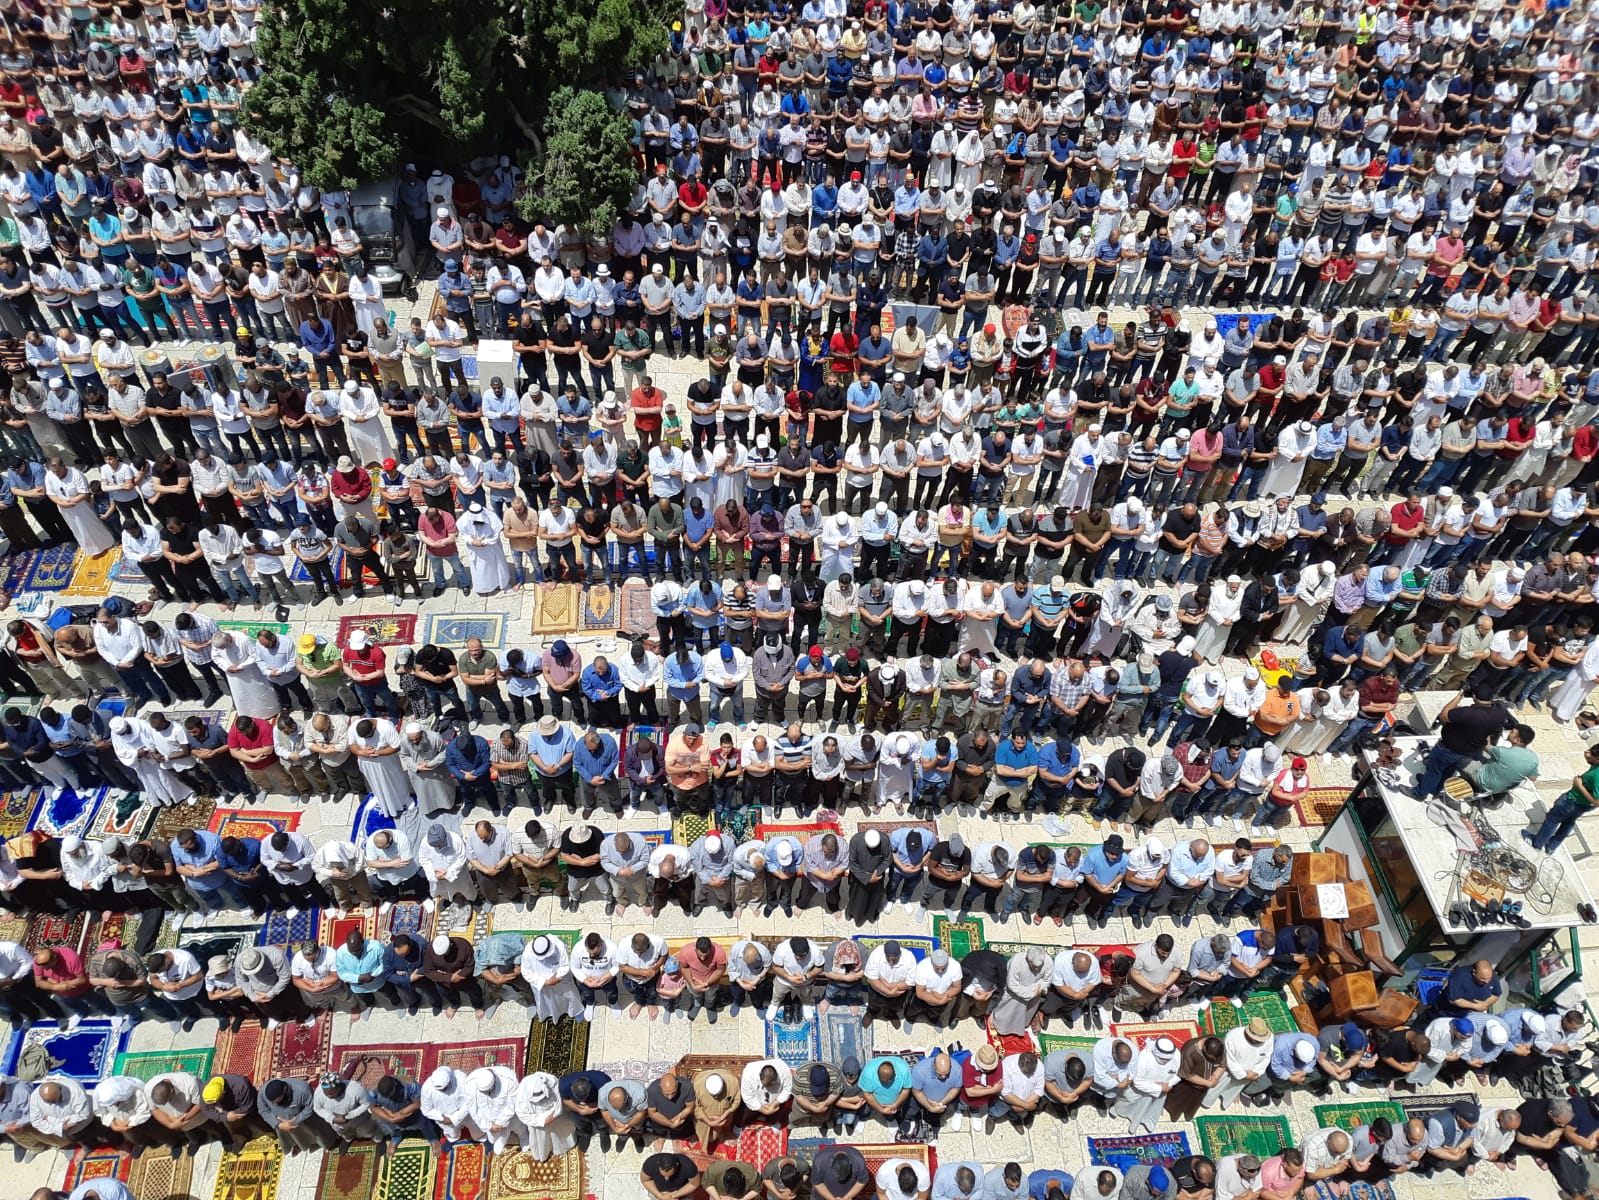  200 الف يؤدون صلاة الجمعة الثانية من رمضان في رحاب المسجد الاقصى وسط إجراءات أمنية إسرائيلية مشددة